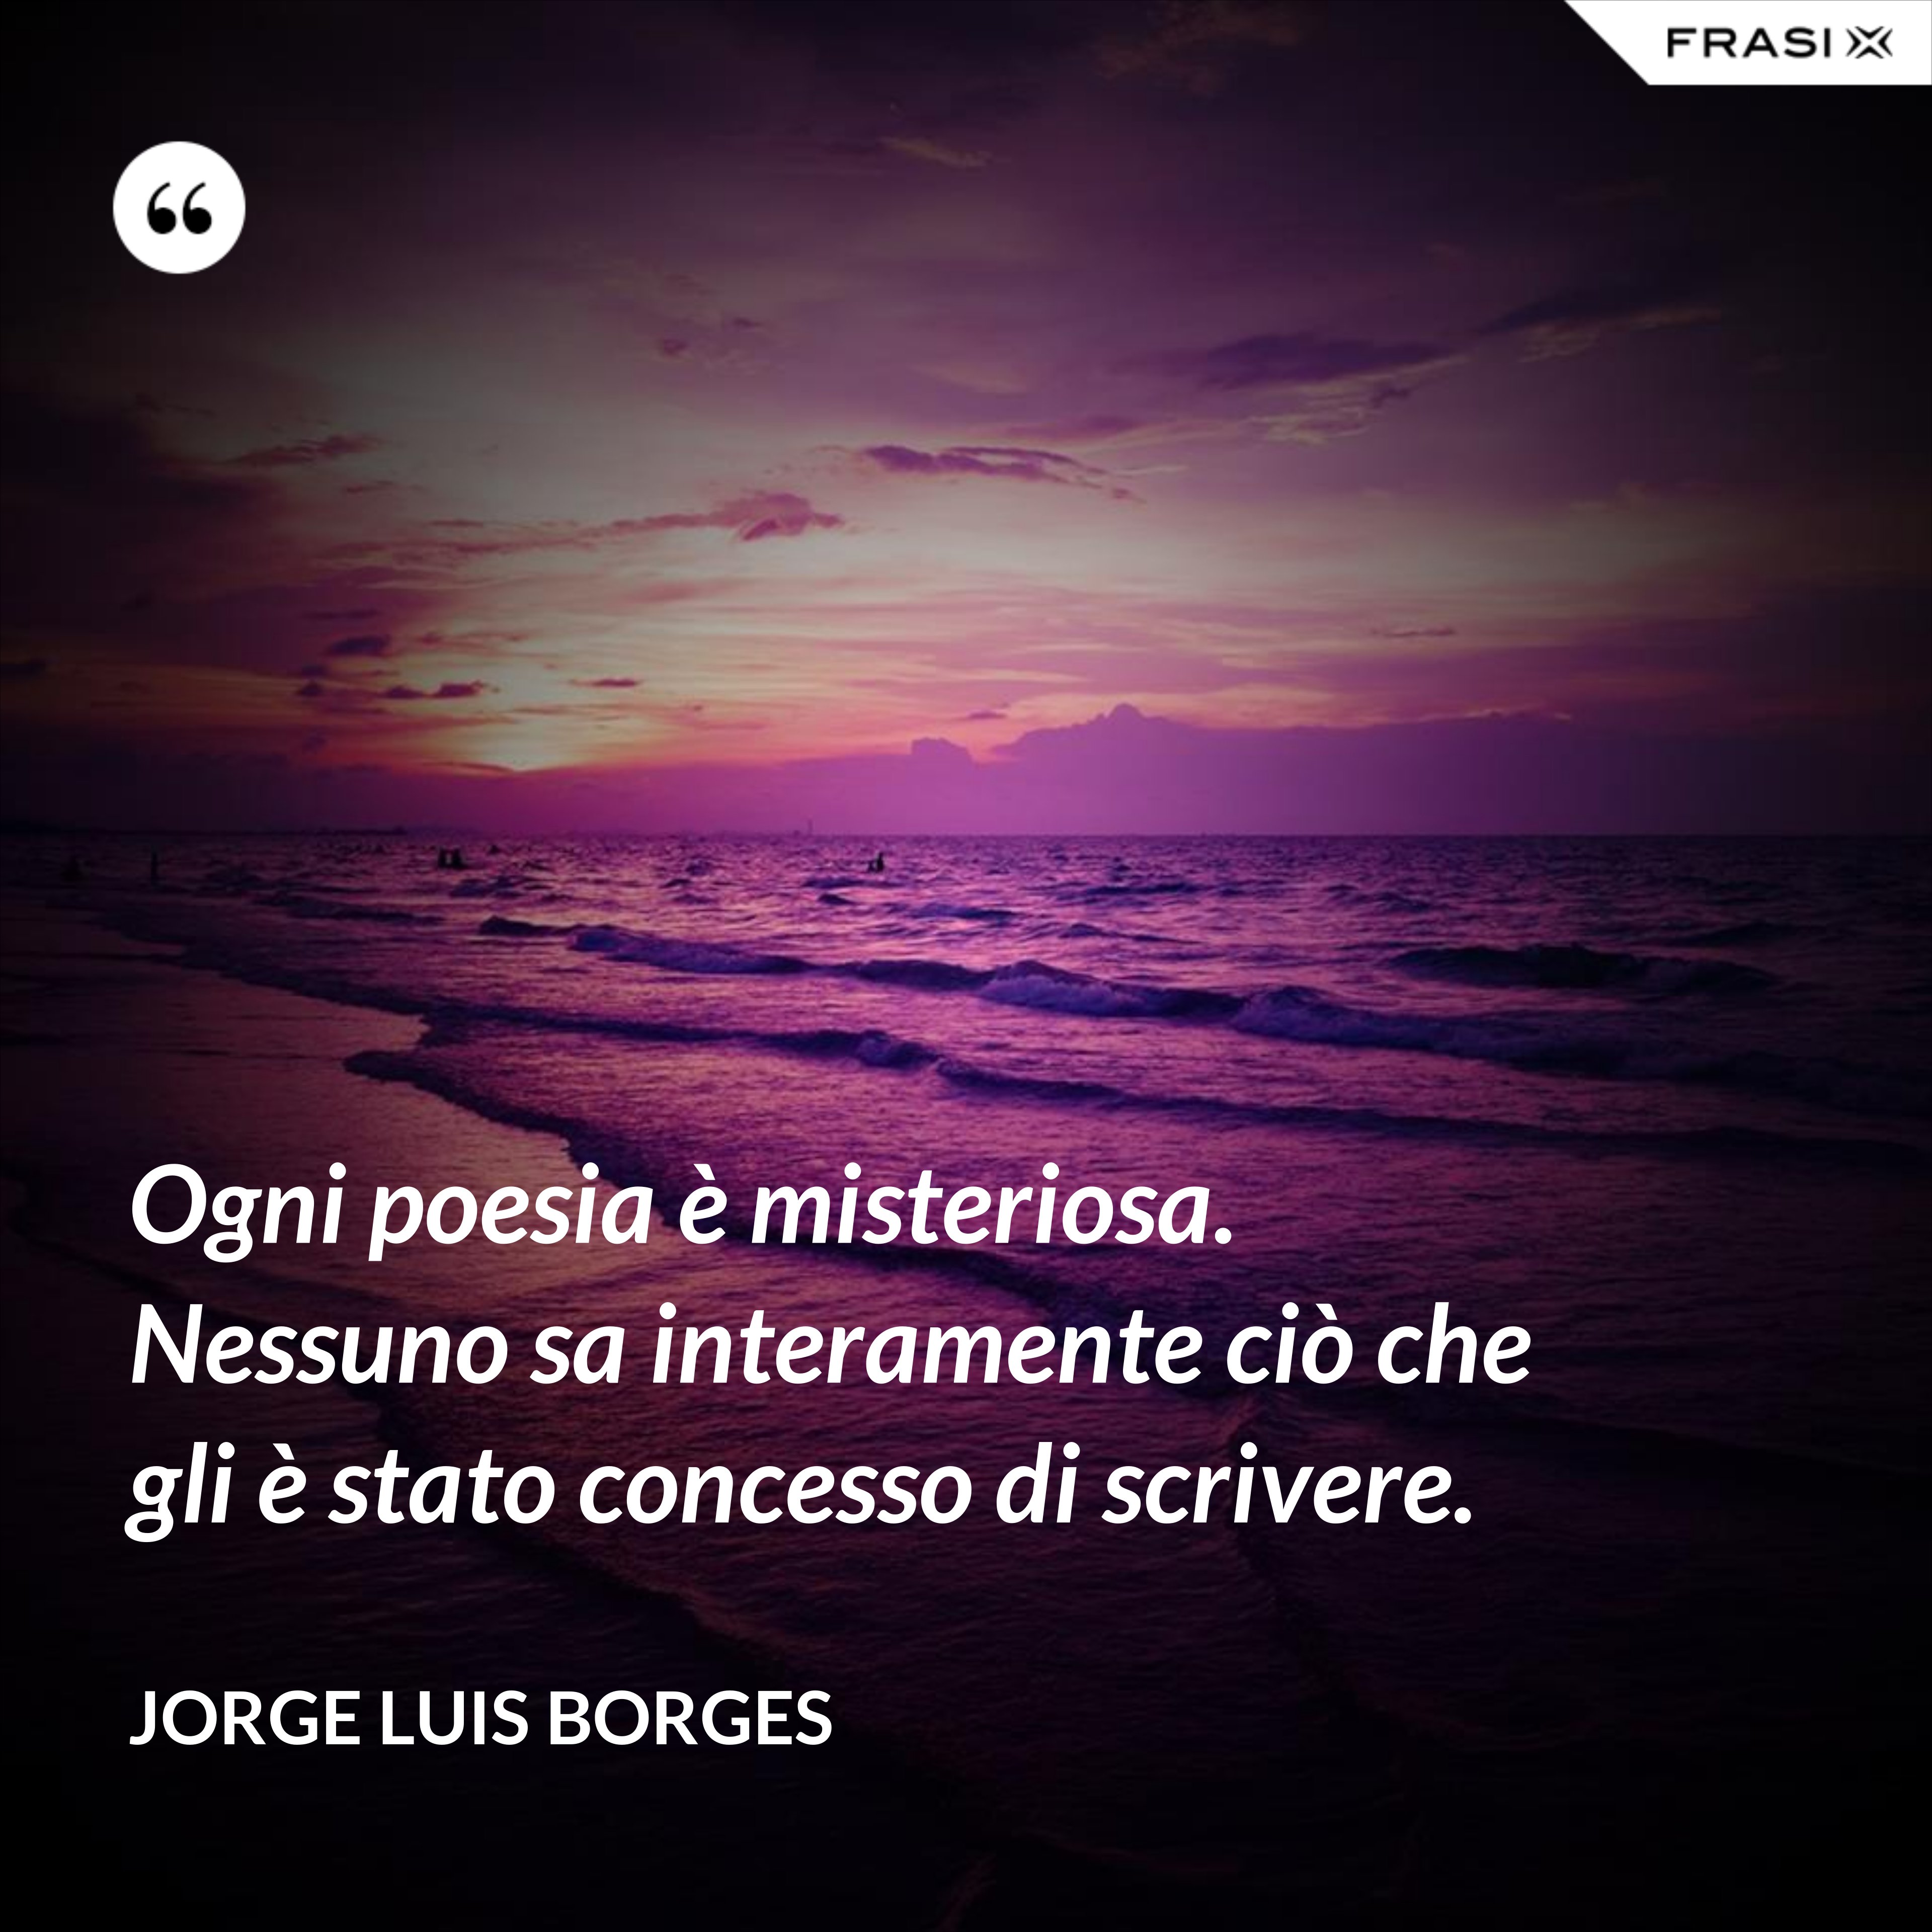 Ogni poesia è misteriosa. Nessuno sa interamente ciò che gli è stato concesso di scrivere. - Jorge Luis Borges